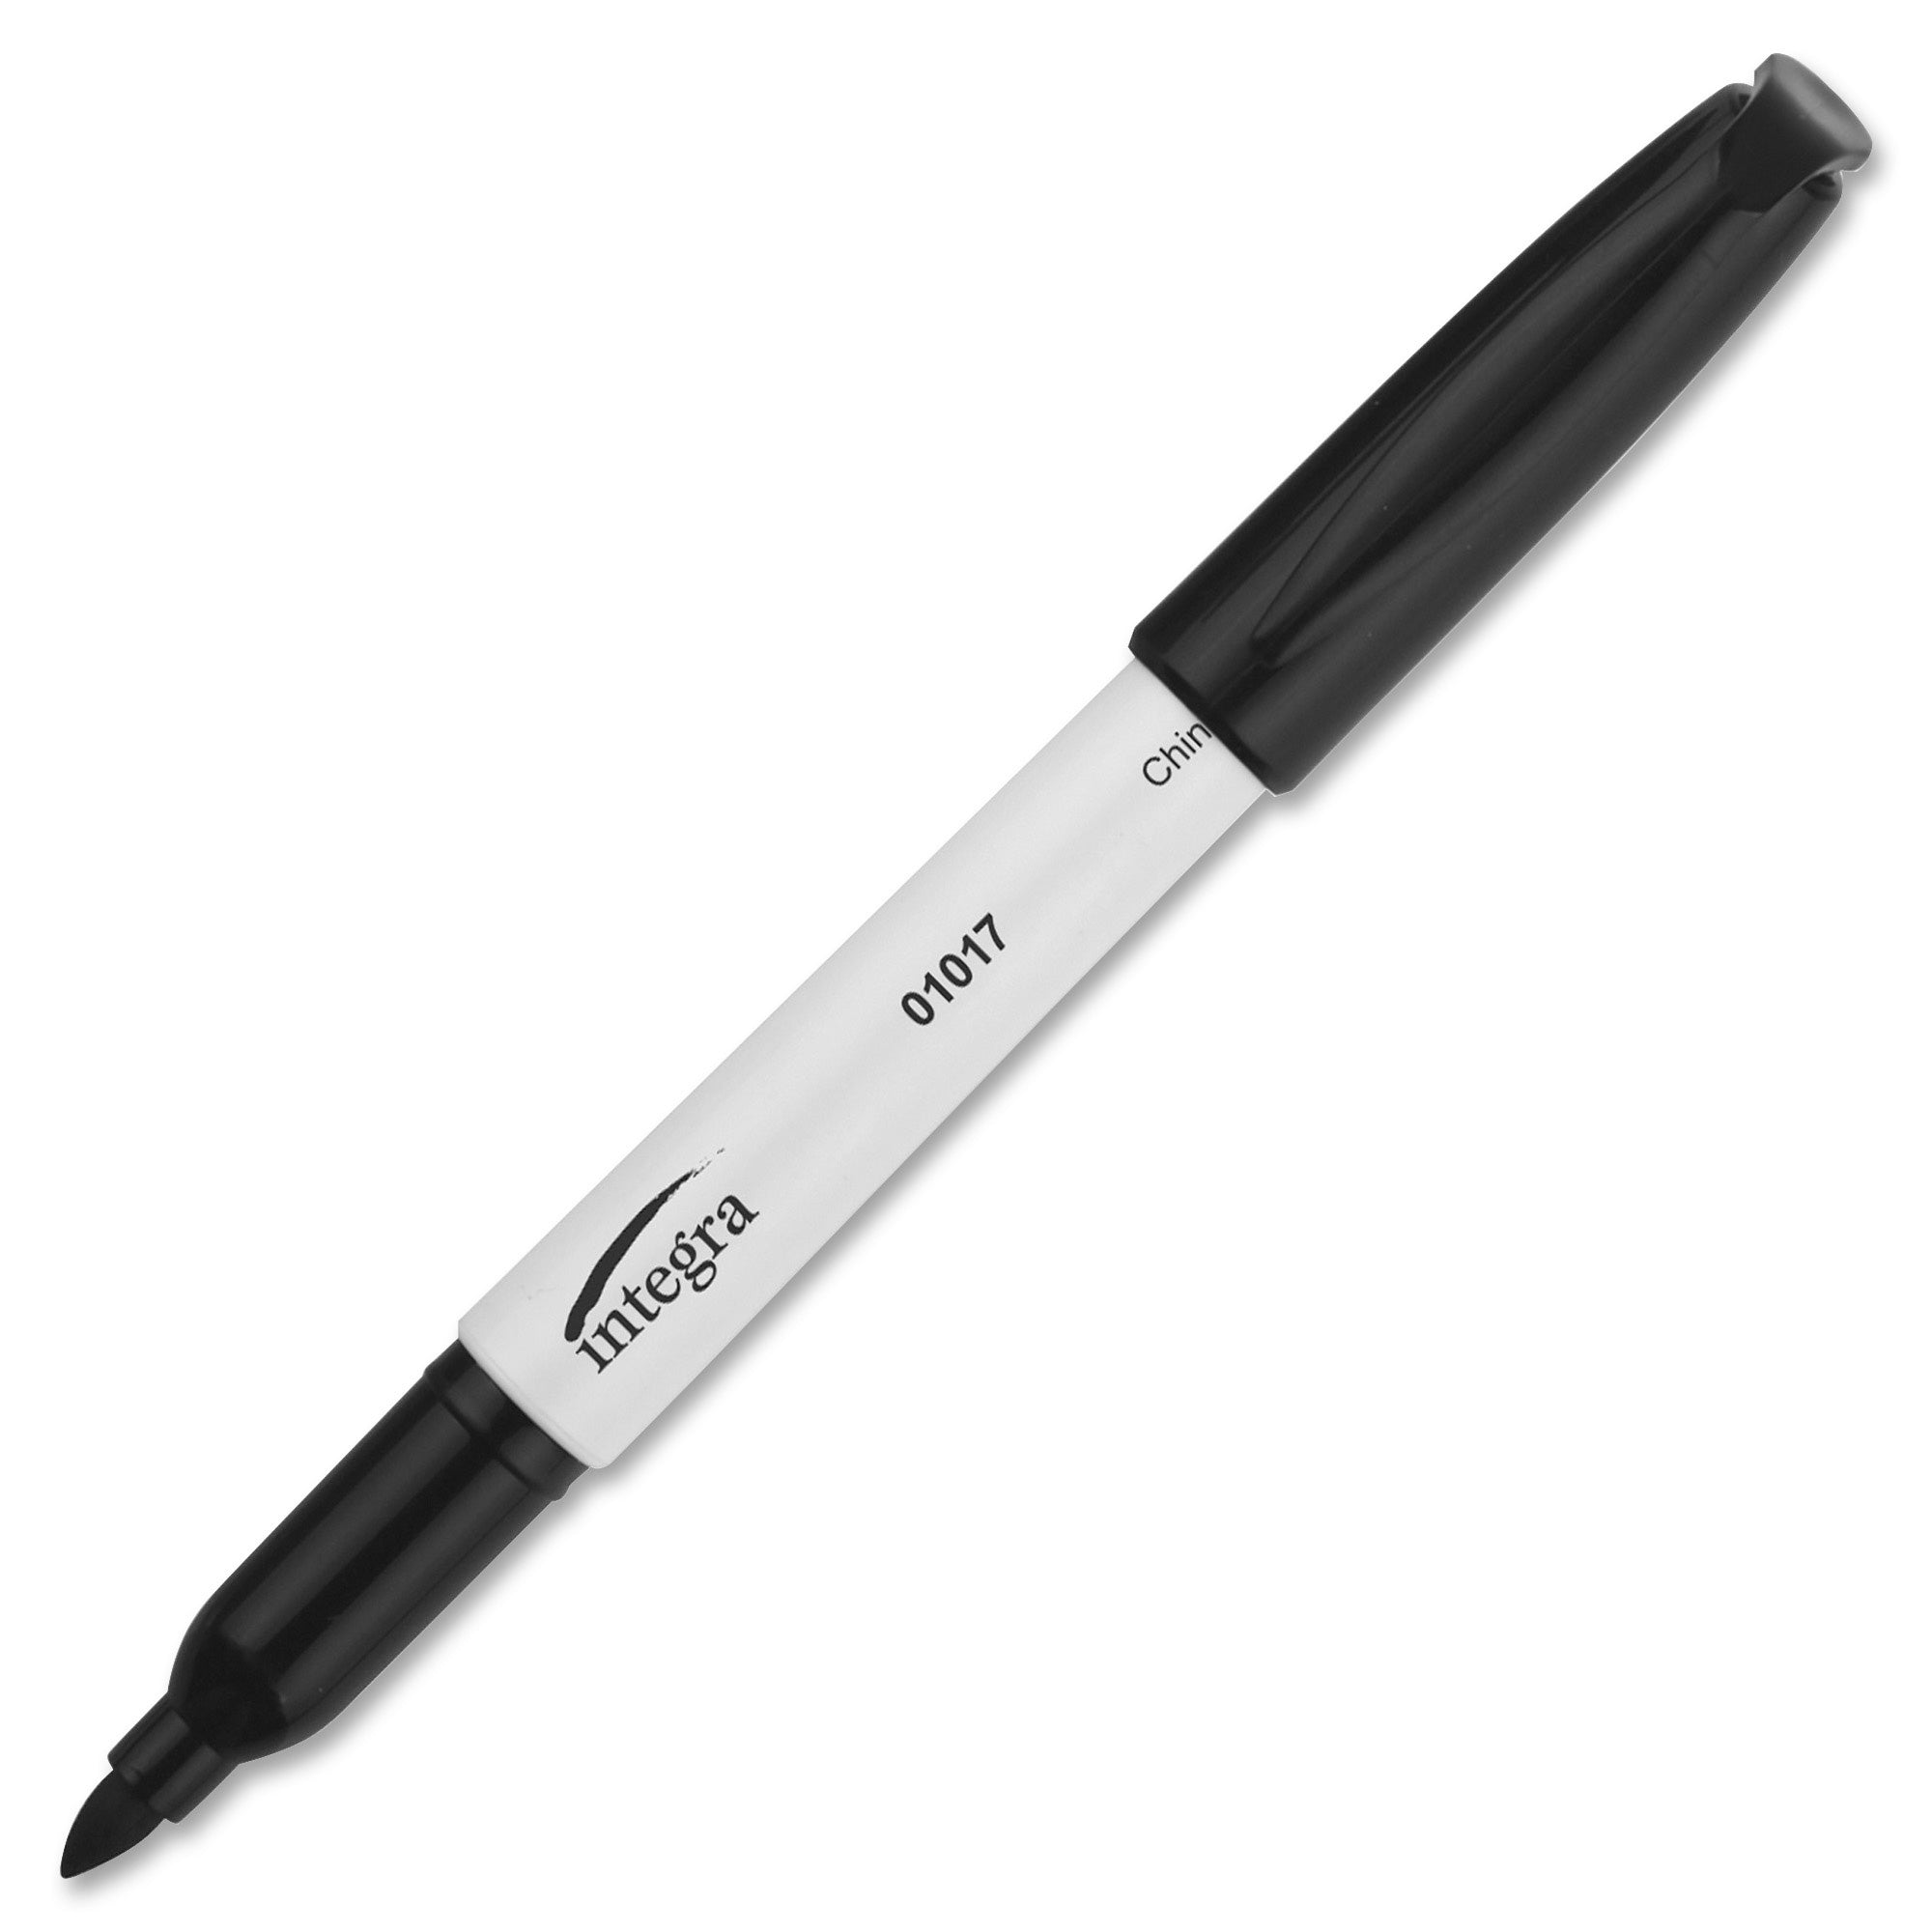 Integra Bullet Tip Dry-erase Whiteboard Markers - Bullet Marker Point Style - Black Alcohol Based Ink - Black Barrel - Fiber Tip - 1 Dozen - 